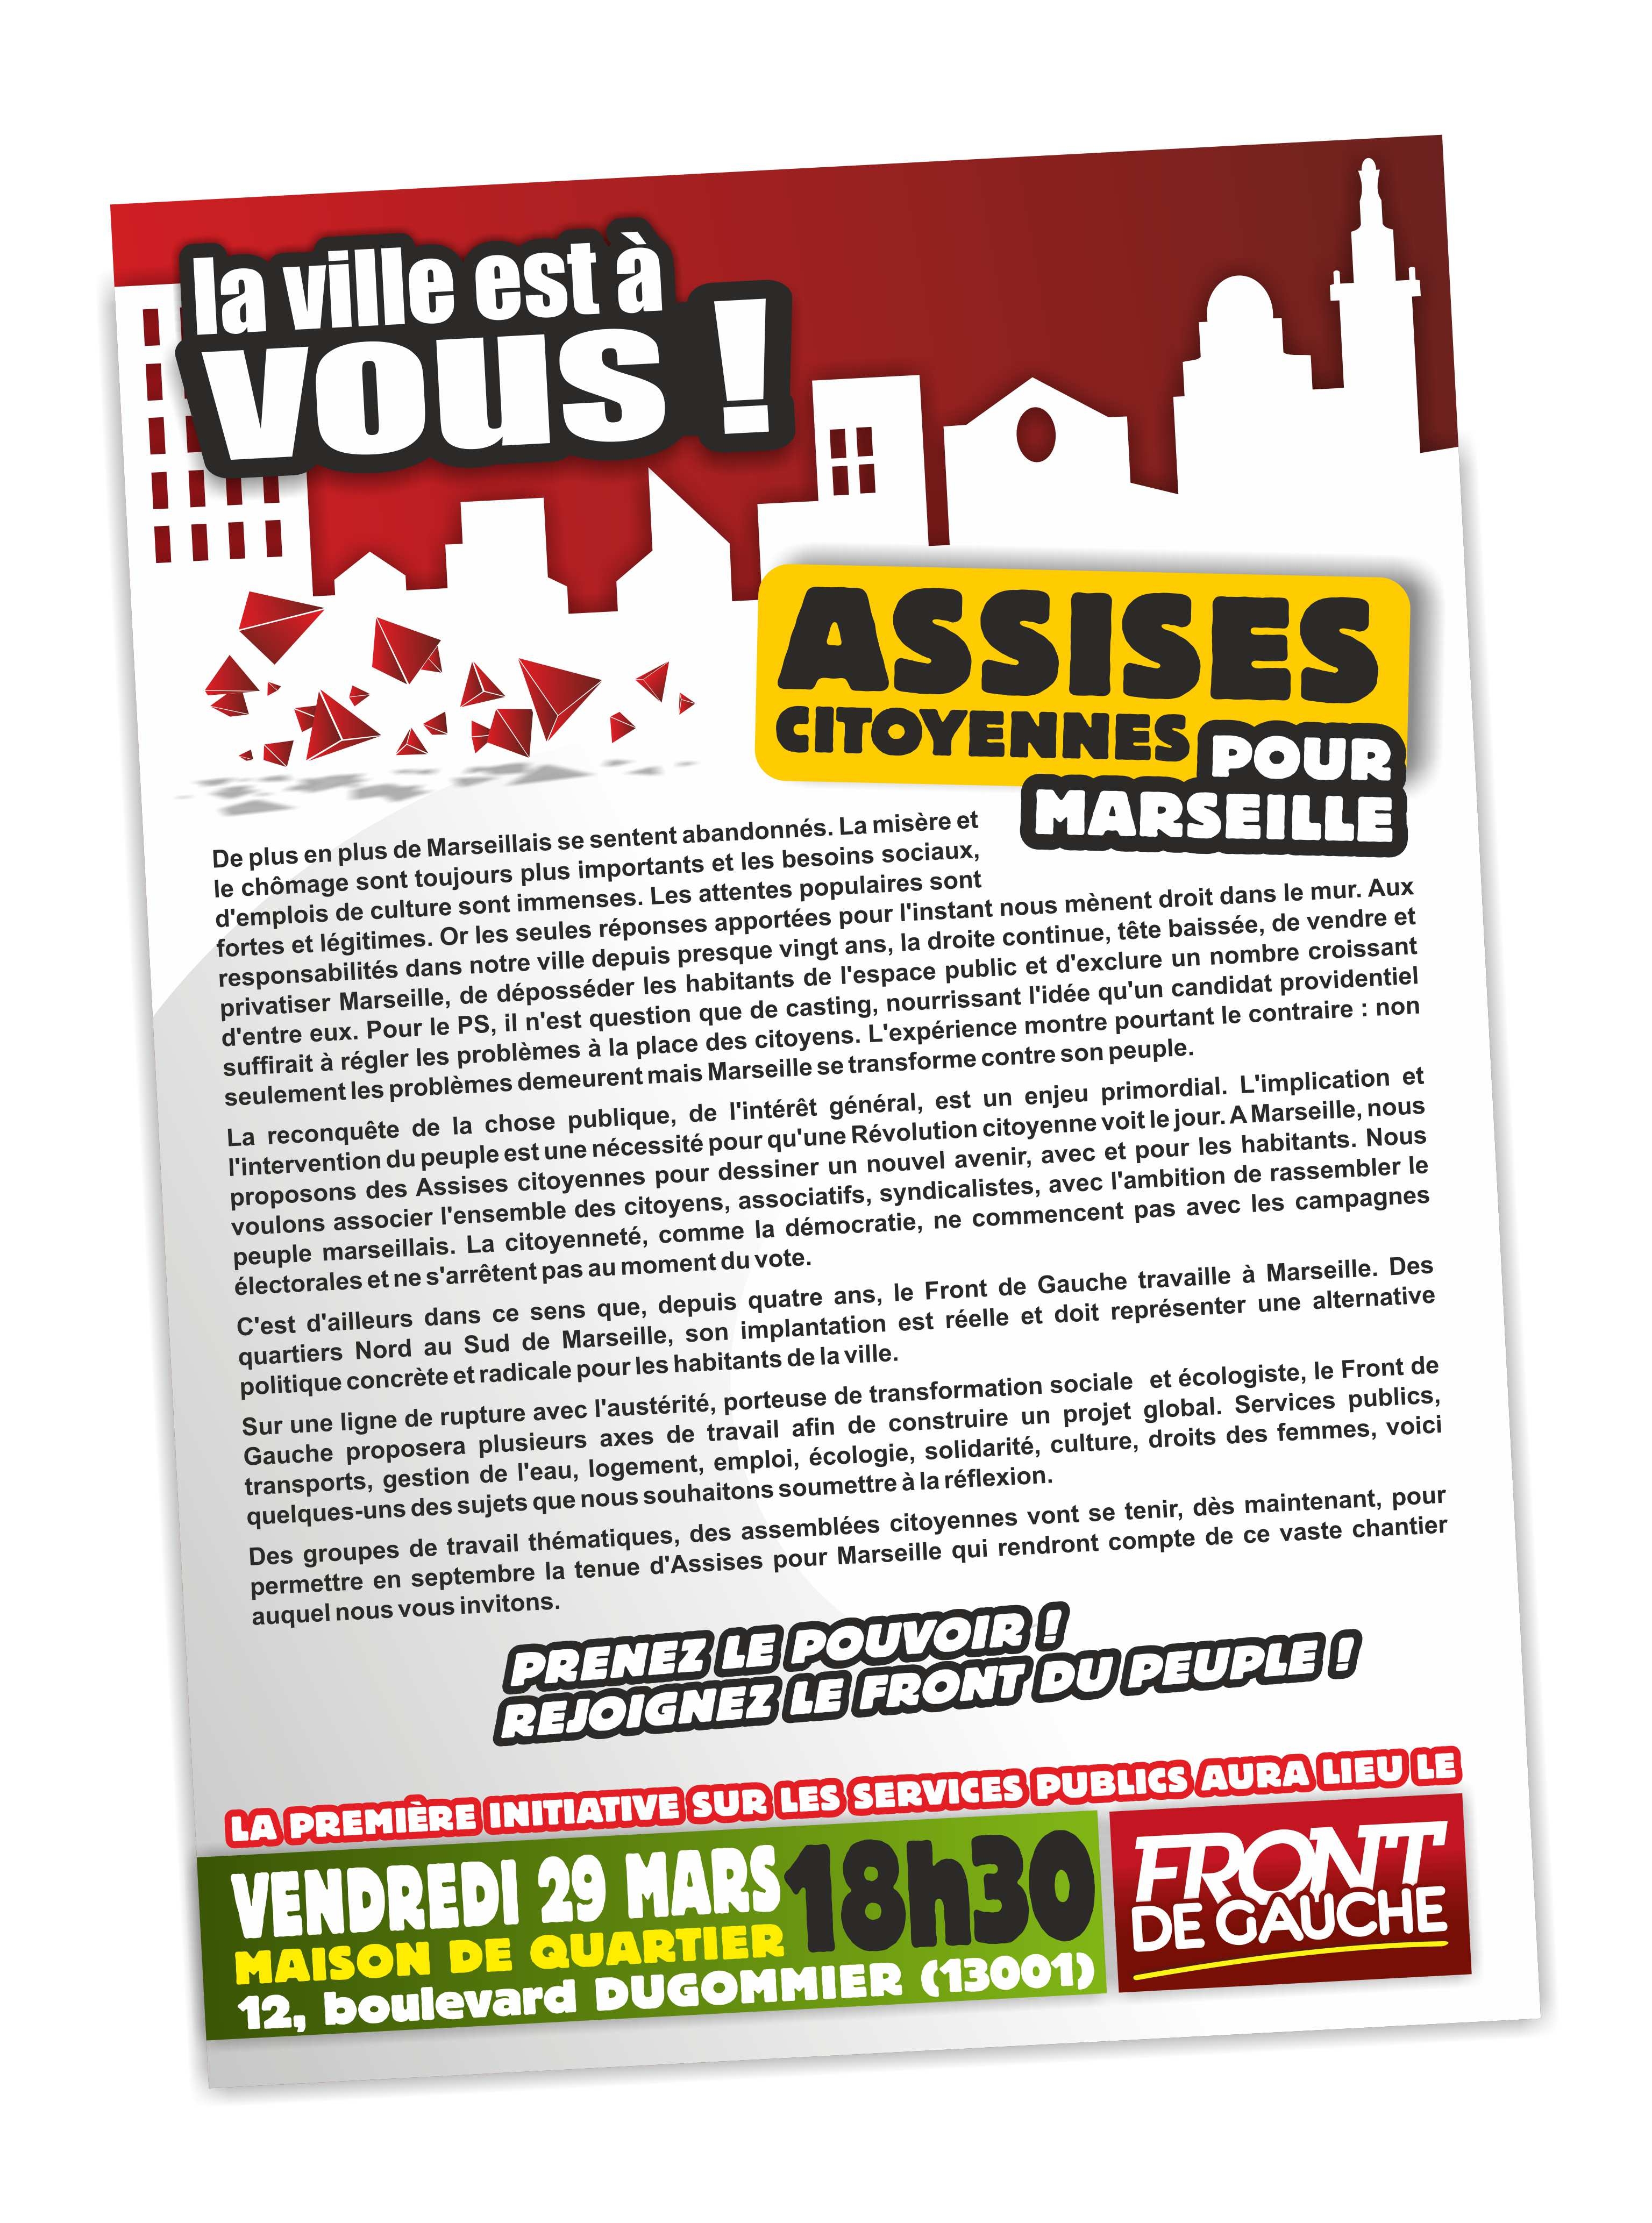 Assises Citoyennes pour Marseille : le 29 mars à 18h30 !